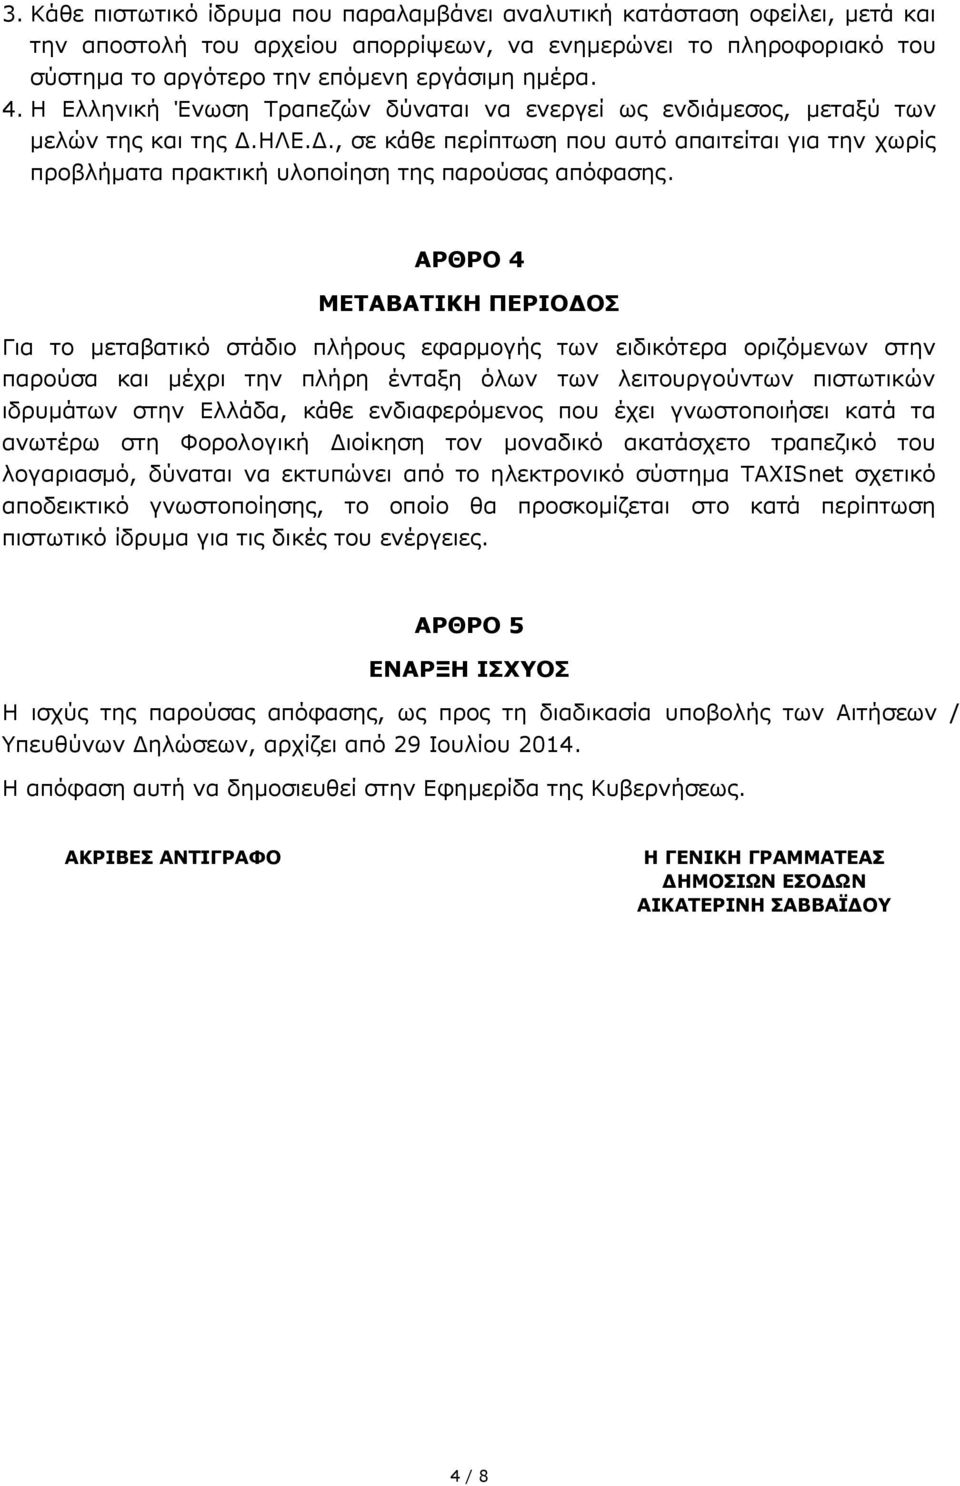 ΑΡΘΡΟ 4 ΜΕΤΑΒΑΤΙΚΗ ΠΕΡΙΟΔΟΣ Για το μεταβατικό στάδιο πλήρους εφαρμογής των ειδικότερα οριζόμενων στην παρούσα και μέχρι την πλήρη ένταξη όλων των λειτουργούντων πιστωτικών ιδρυμάτων στην Ελλάδα, κάθε